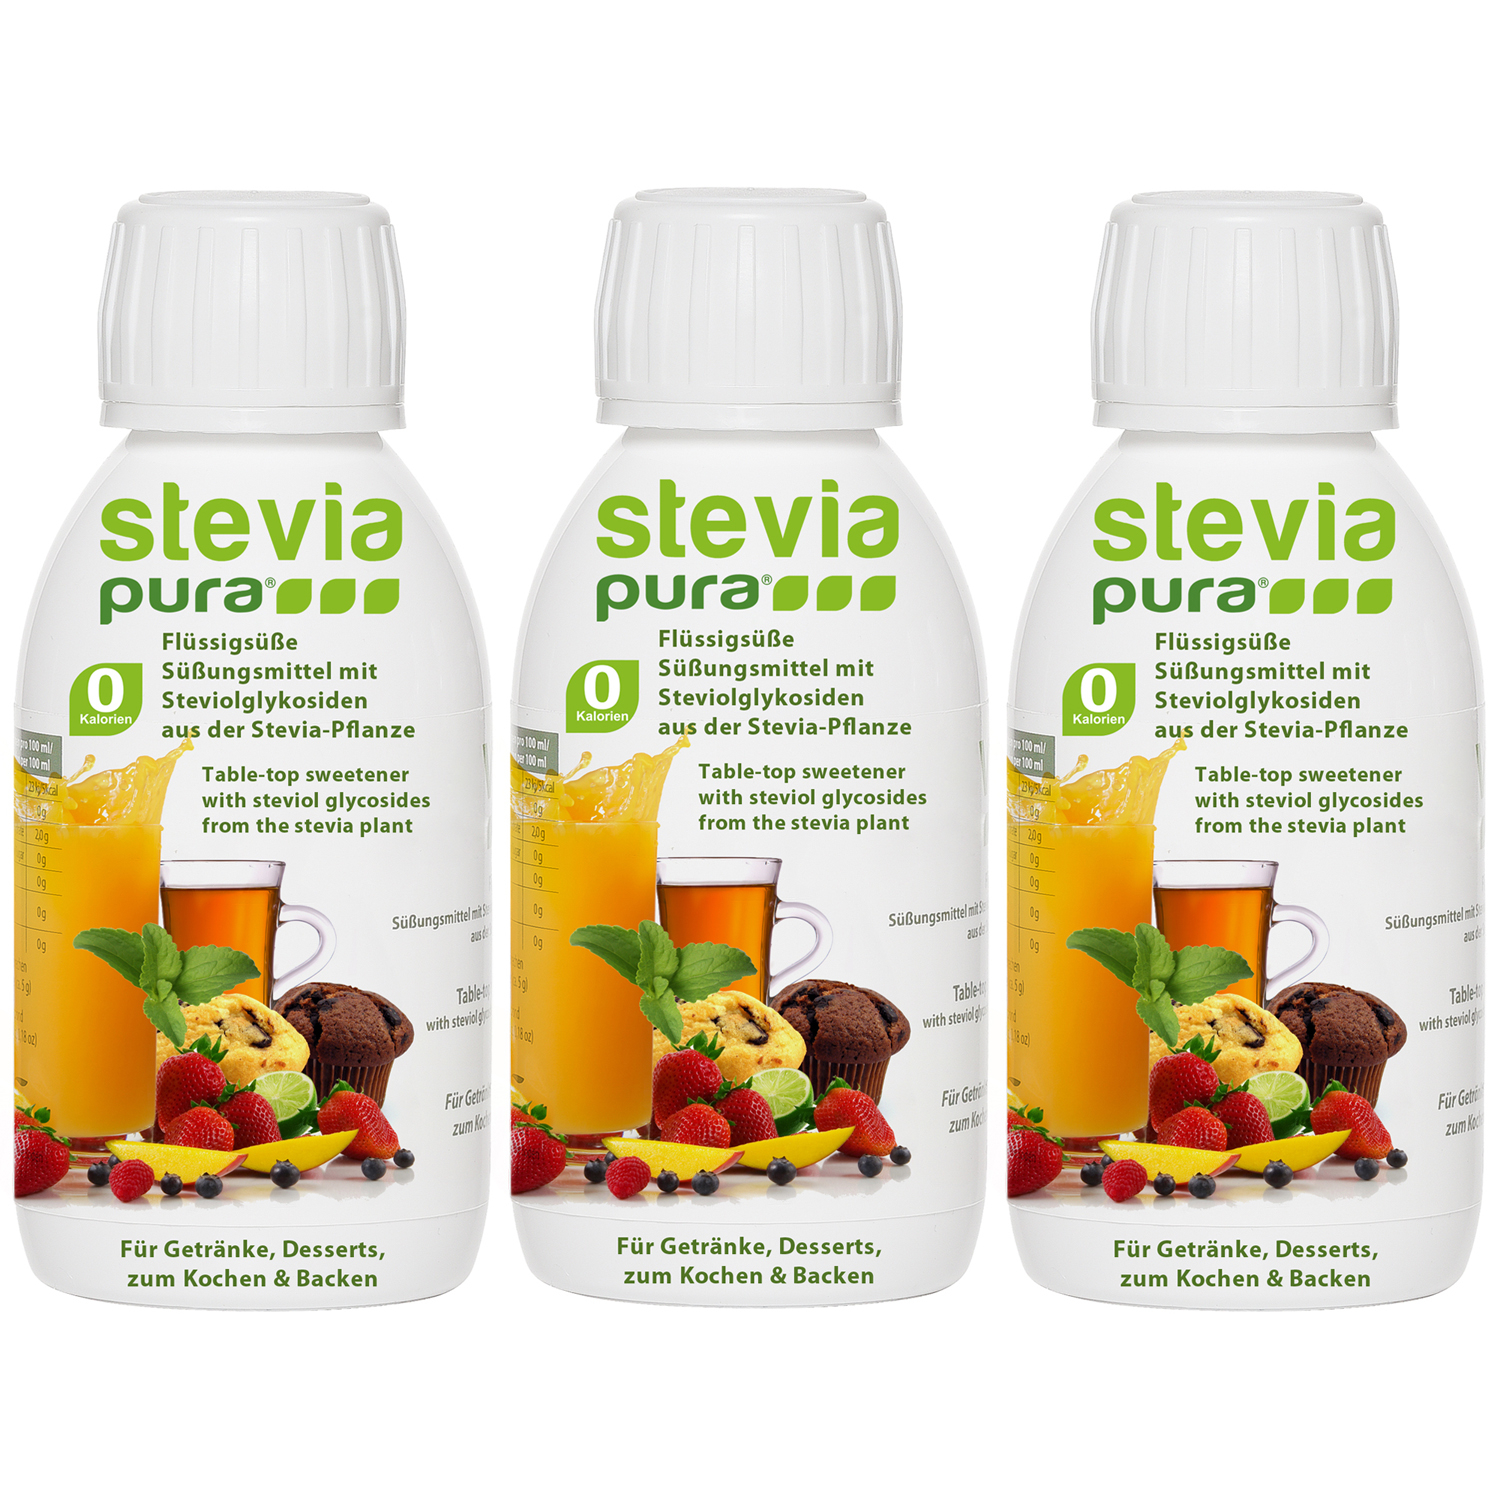 Stevia vloeibaar is de vloeibare variant van de zoetstof uit het Stevia rebaudiana plantje. 